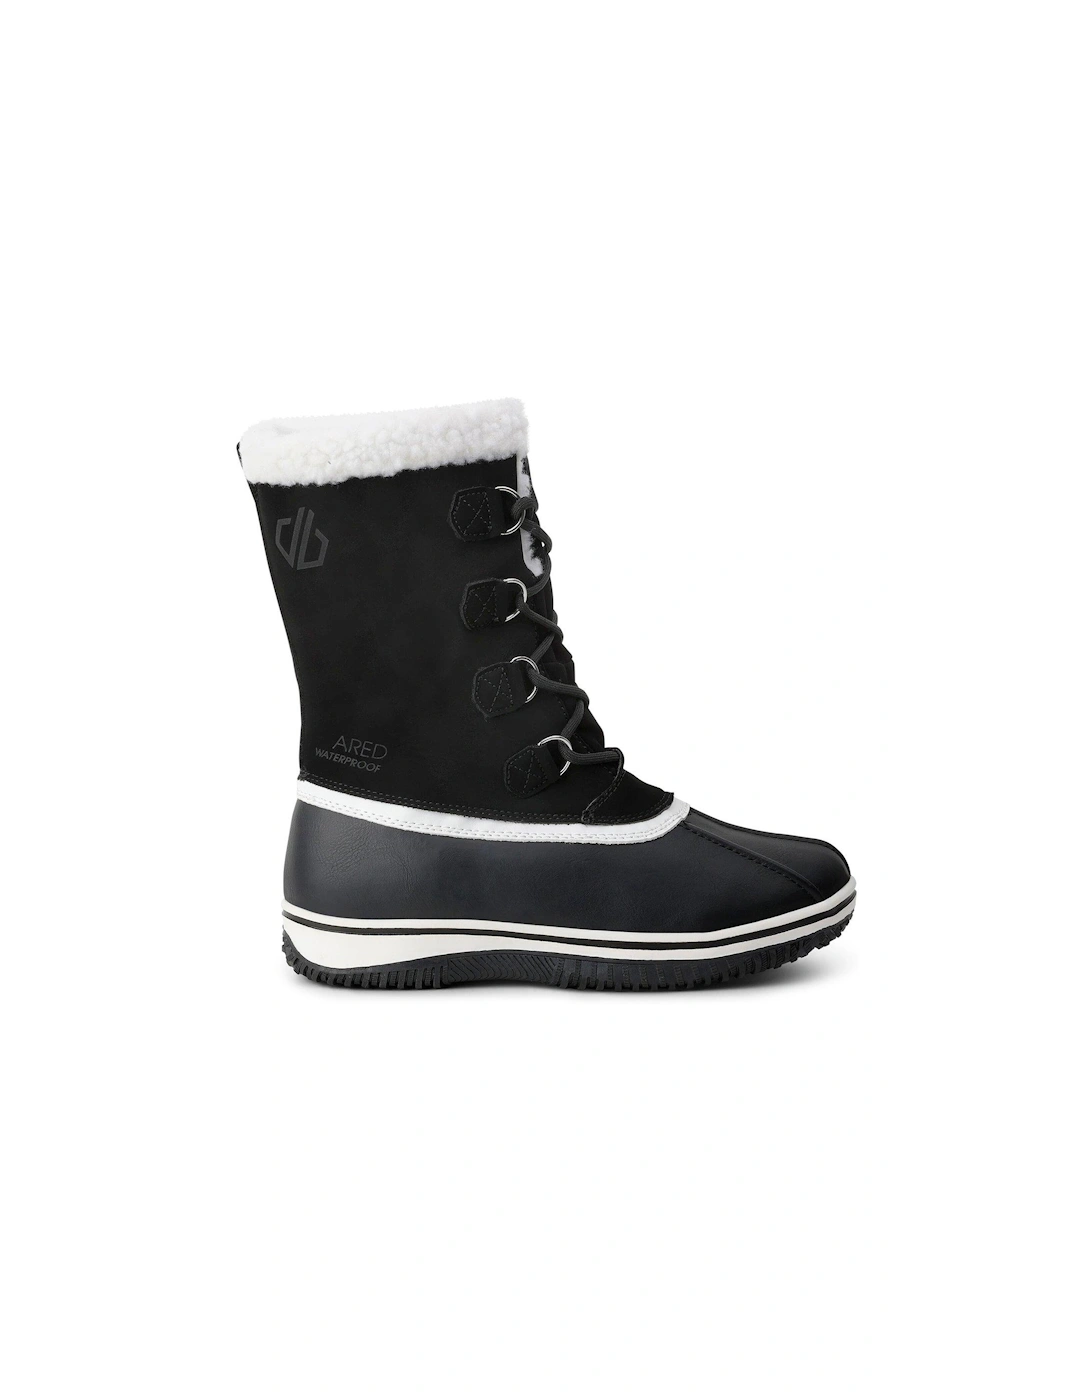 Women's Northstar Snow Boot - Black/White, 3 of 2